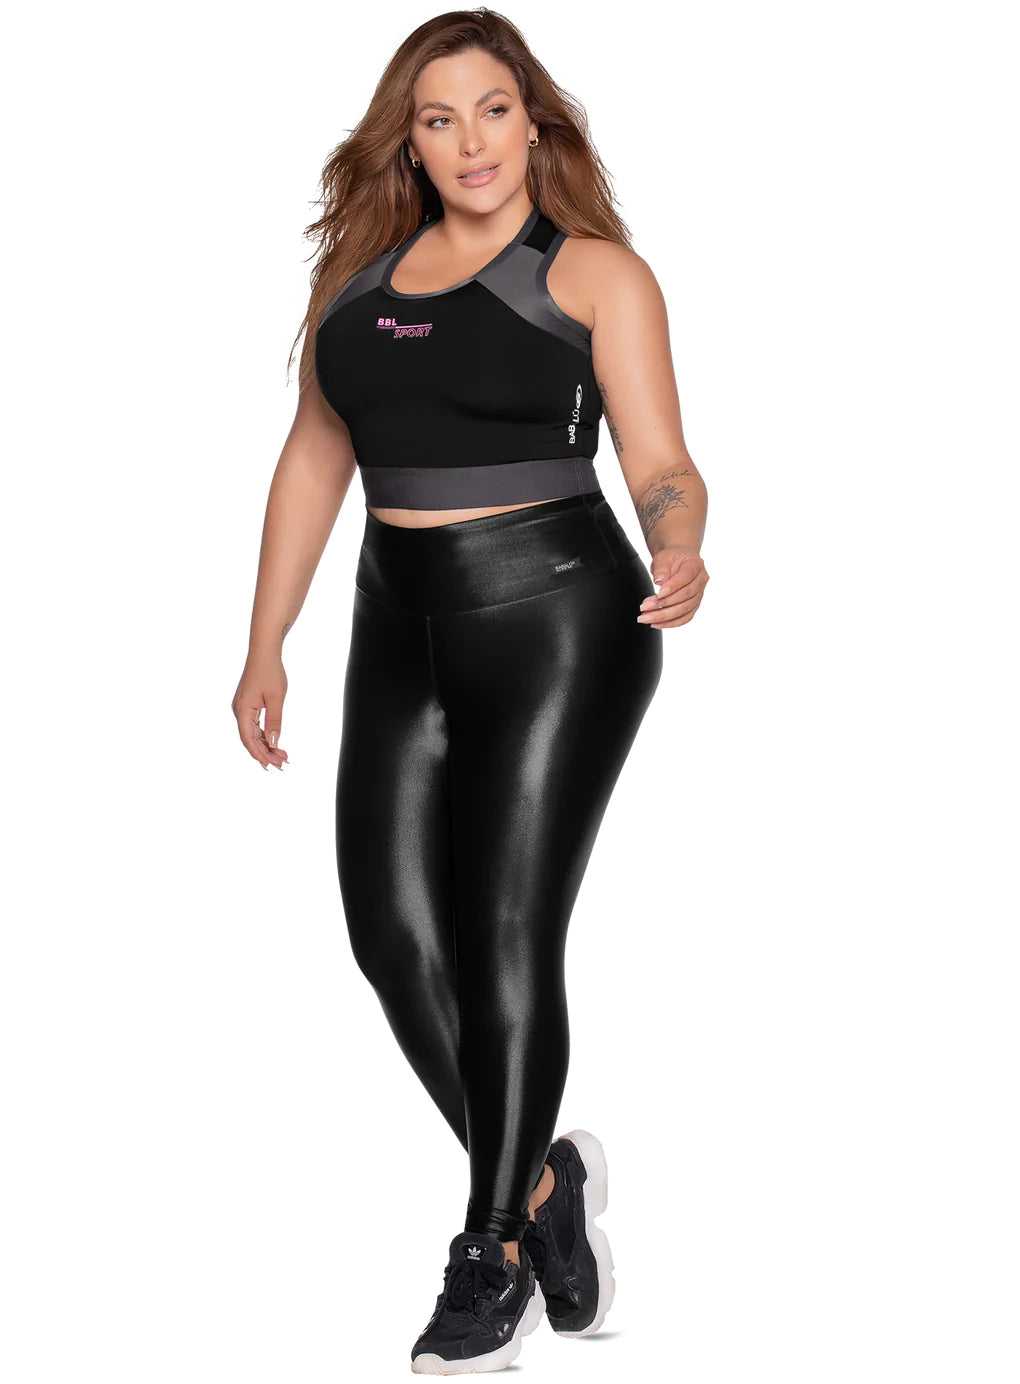 Black Curvy ShowOff Bra XL - YogaWear